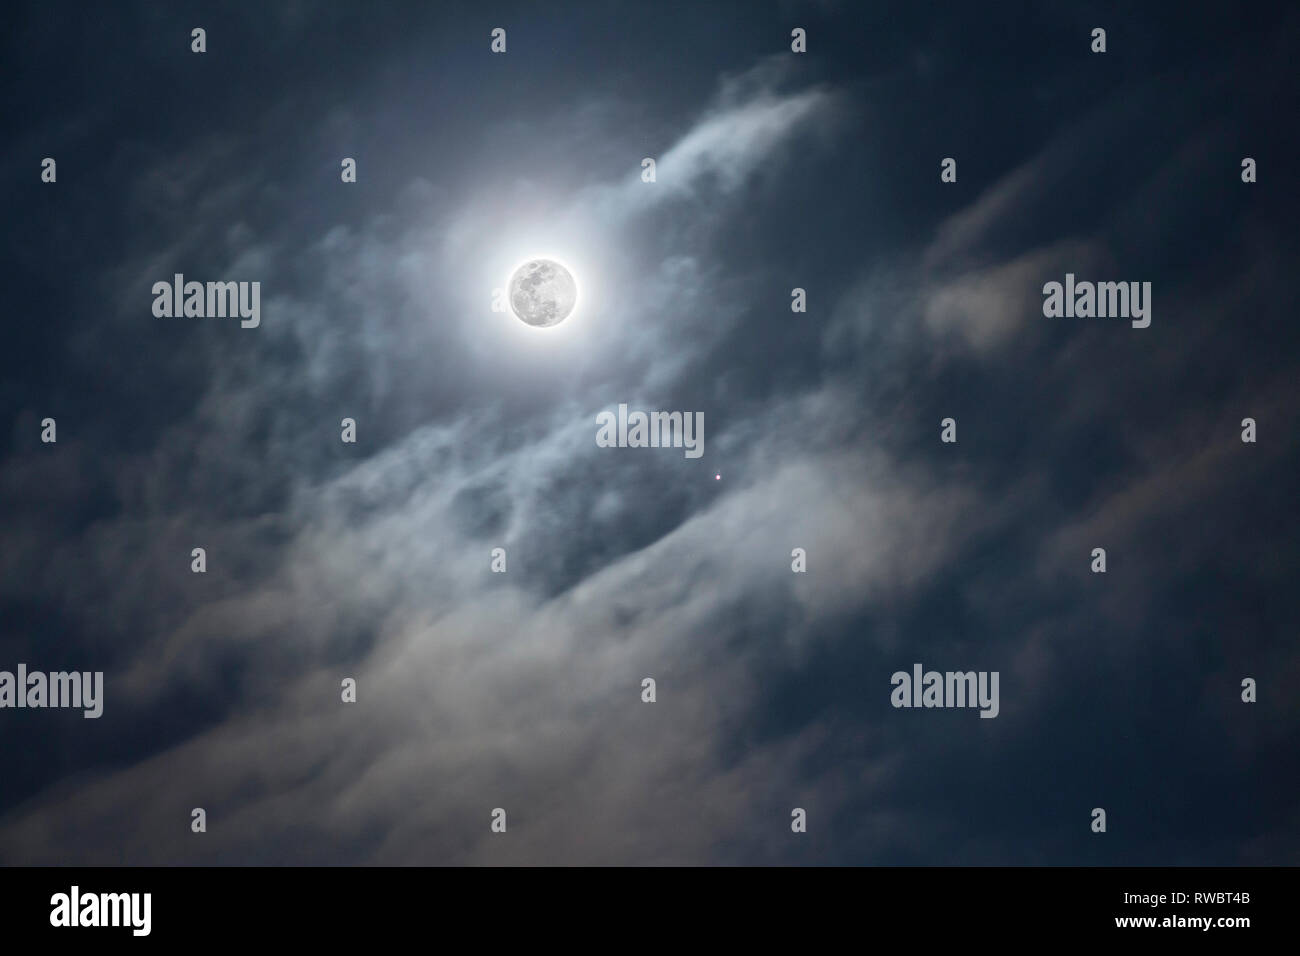 Vollmond an bewölkten Himmel Hintergrund. Planet Jupiter mit Monden. Teleskop Astrofotografie. Astronimical Ereignis Stockfoto